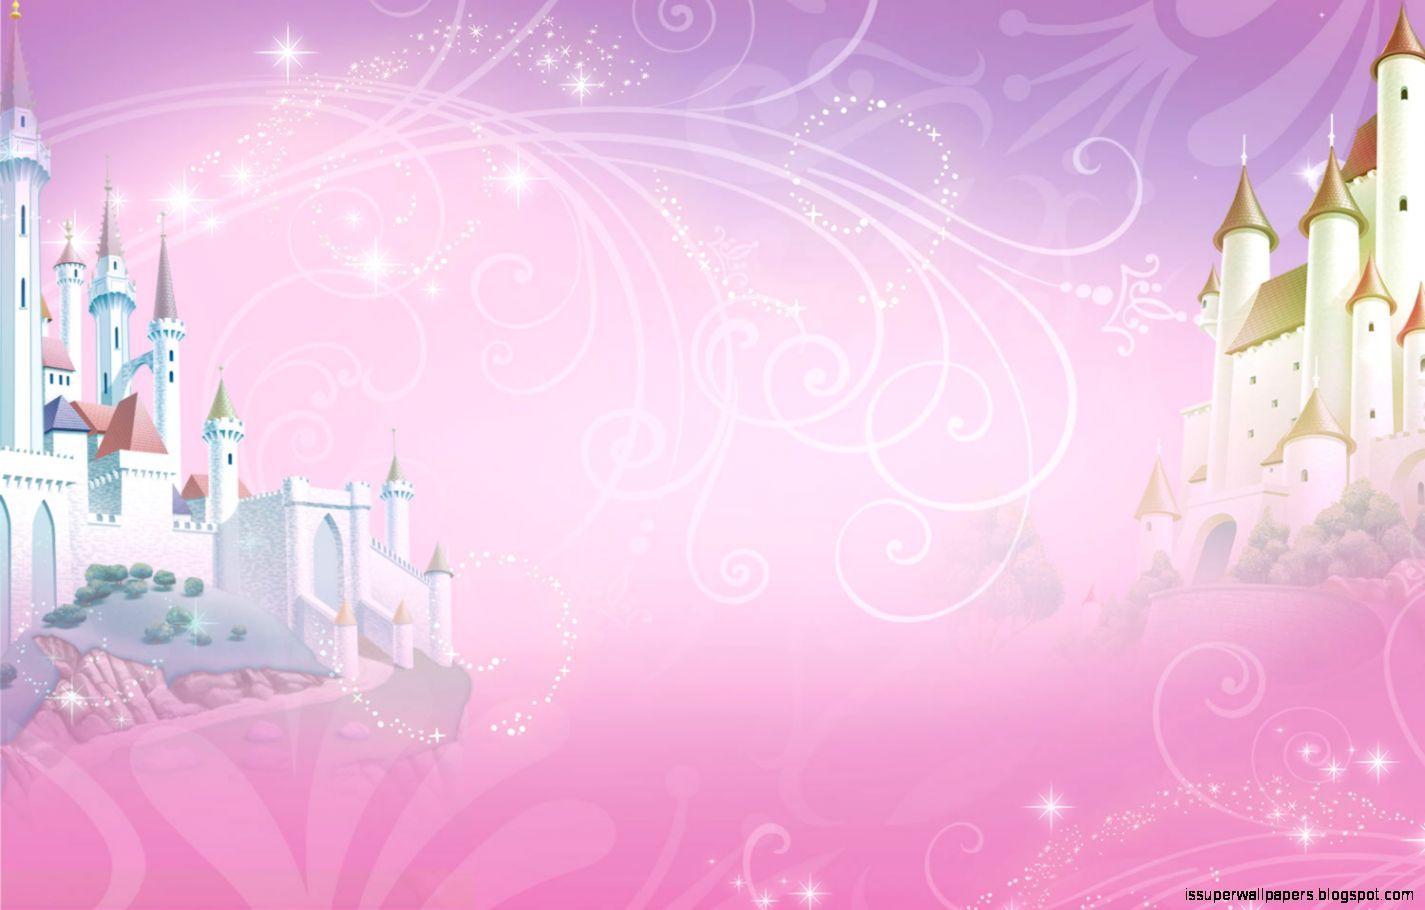 Chọn Tốp hình nền lâu đài công chúa hồng miễn phí để trang trí màn hình của bạn! Bạn sẽ không còn phải khó khăn trong việc lựa chọn hình nền độc đáo và tinh tế cho màn hình nữa. Hãy khám phá bộ sưu tập hình nền lâu đài công chúa hồng và tạo ra một không gian làm việc và giải trí đầy ấn tượng!